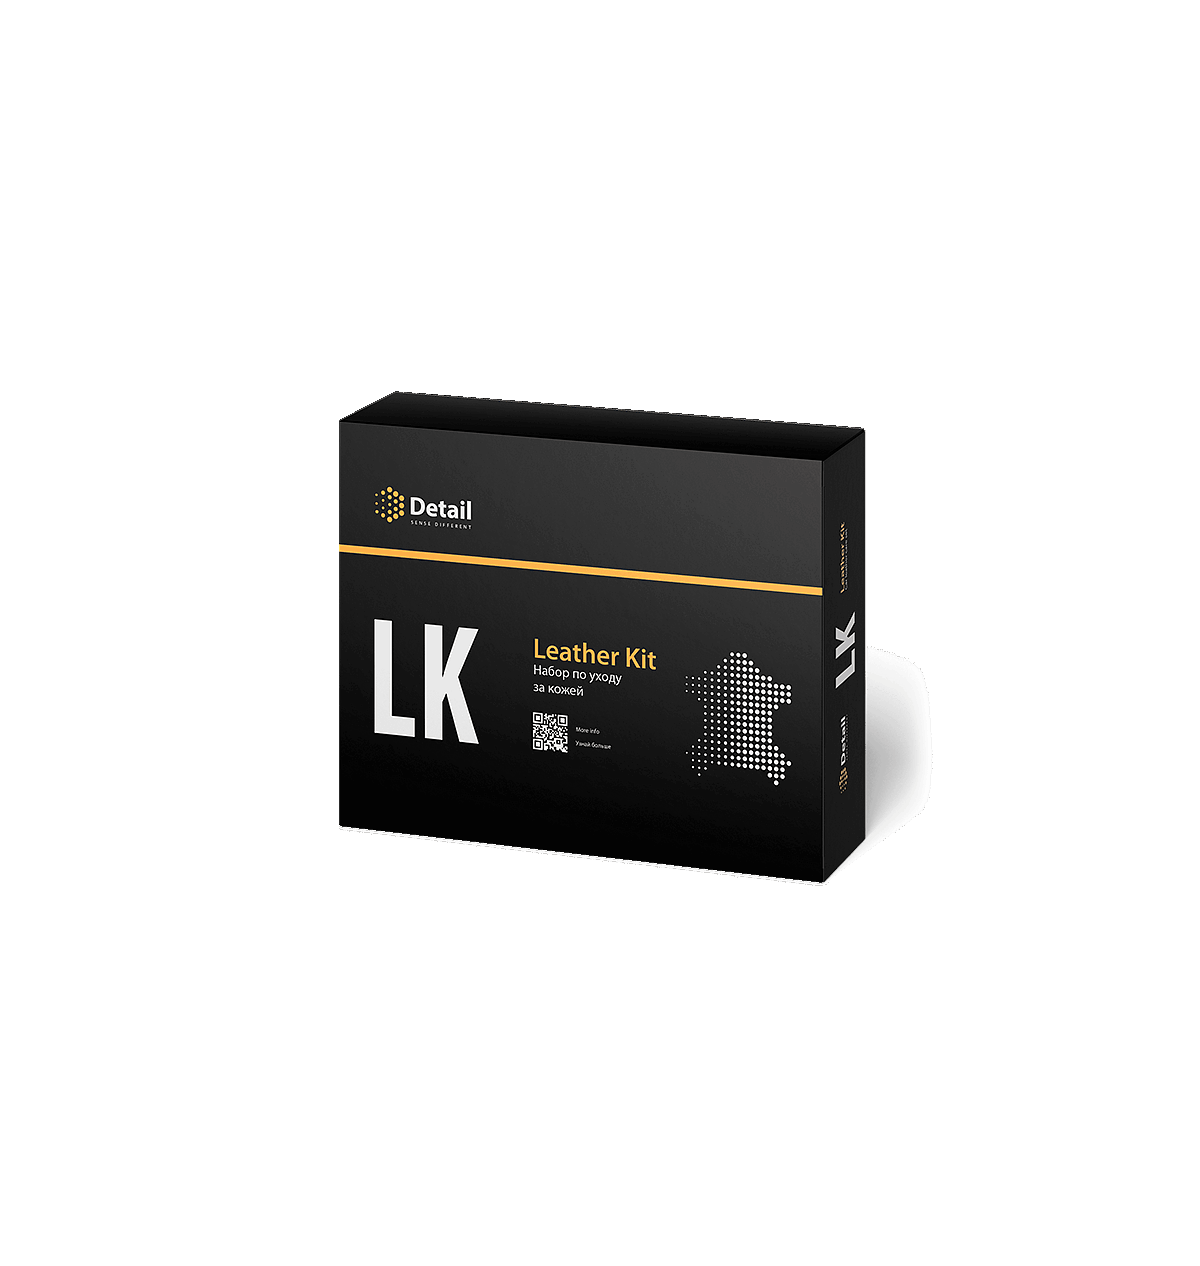 Detail lk. Набор для очистки кожи LK Leather Kit DT-0171. Набор detail LK "Leather Kit". LK "Leather Kit" detail DT-0171. Набор для очистки detail LK.